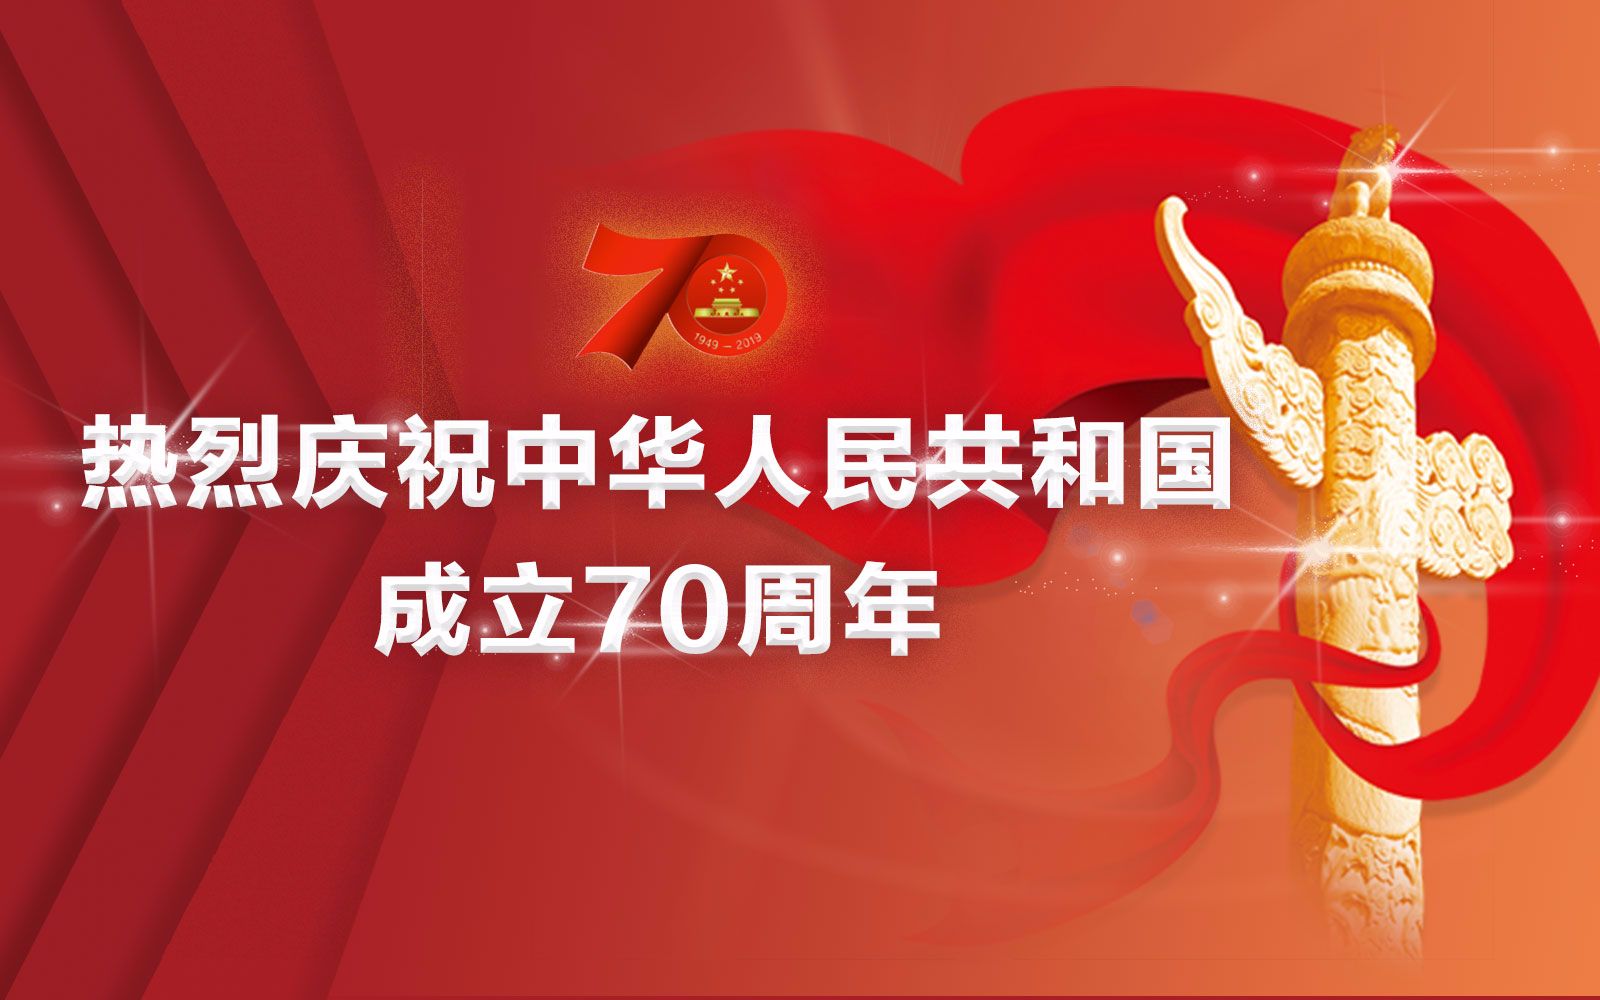 【回放】庆祝中华人民共和国成立70周年大会 阅兵式+群众游行